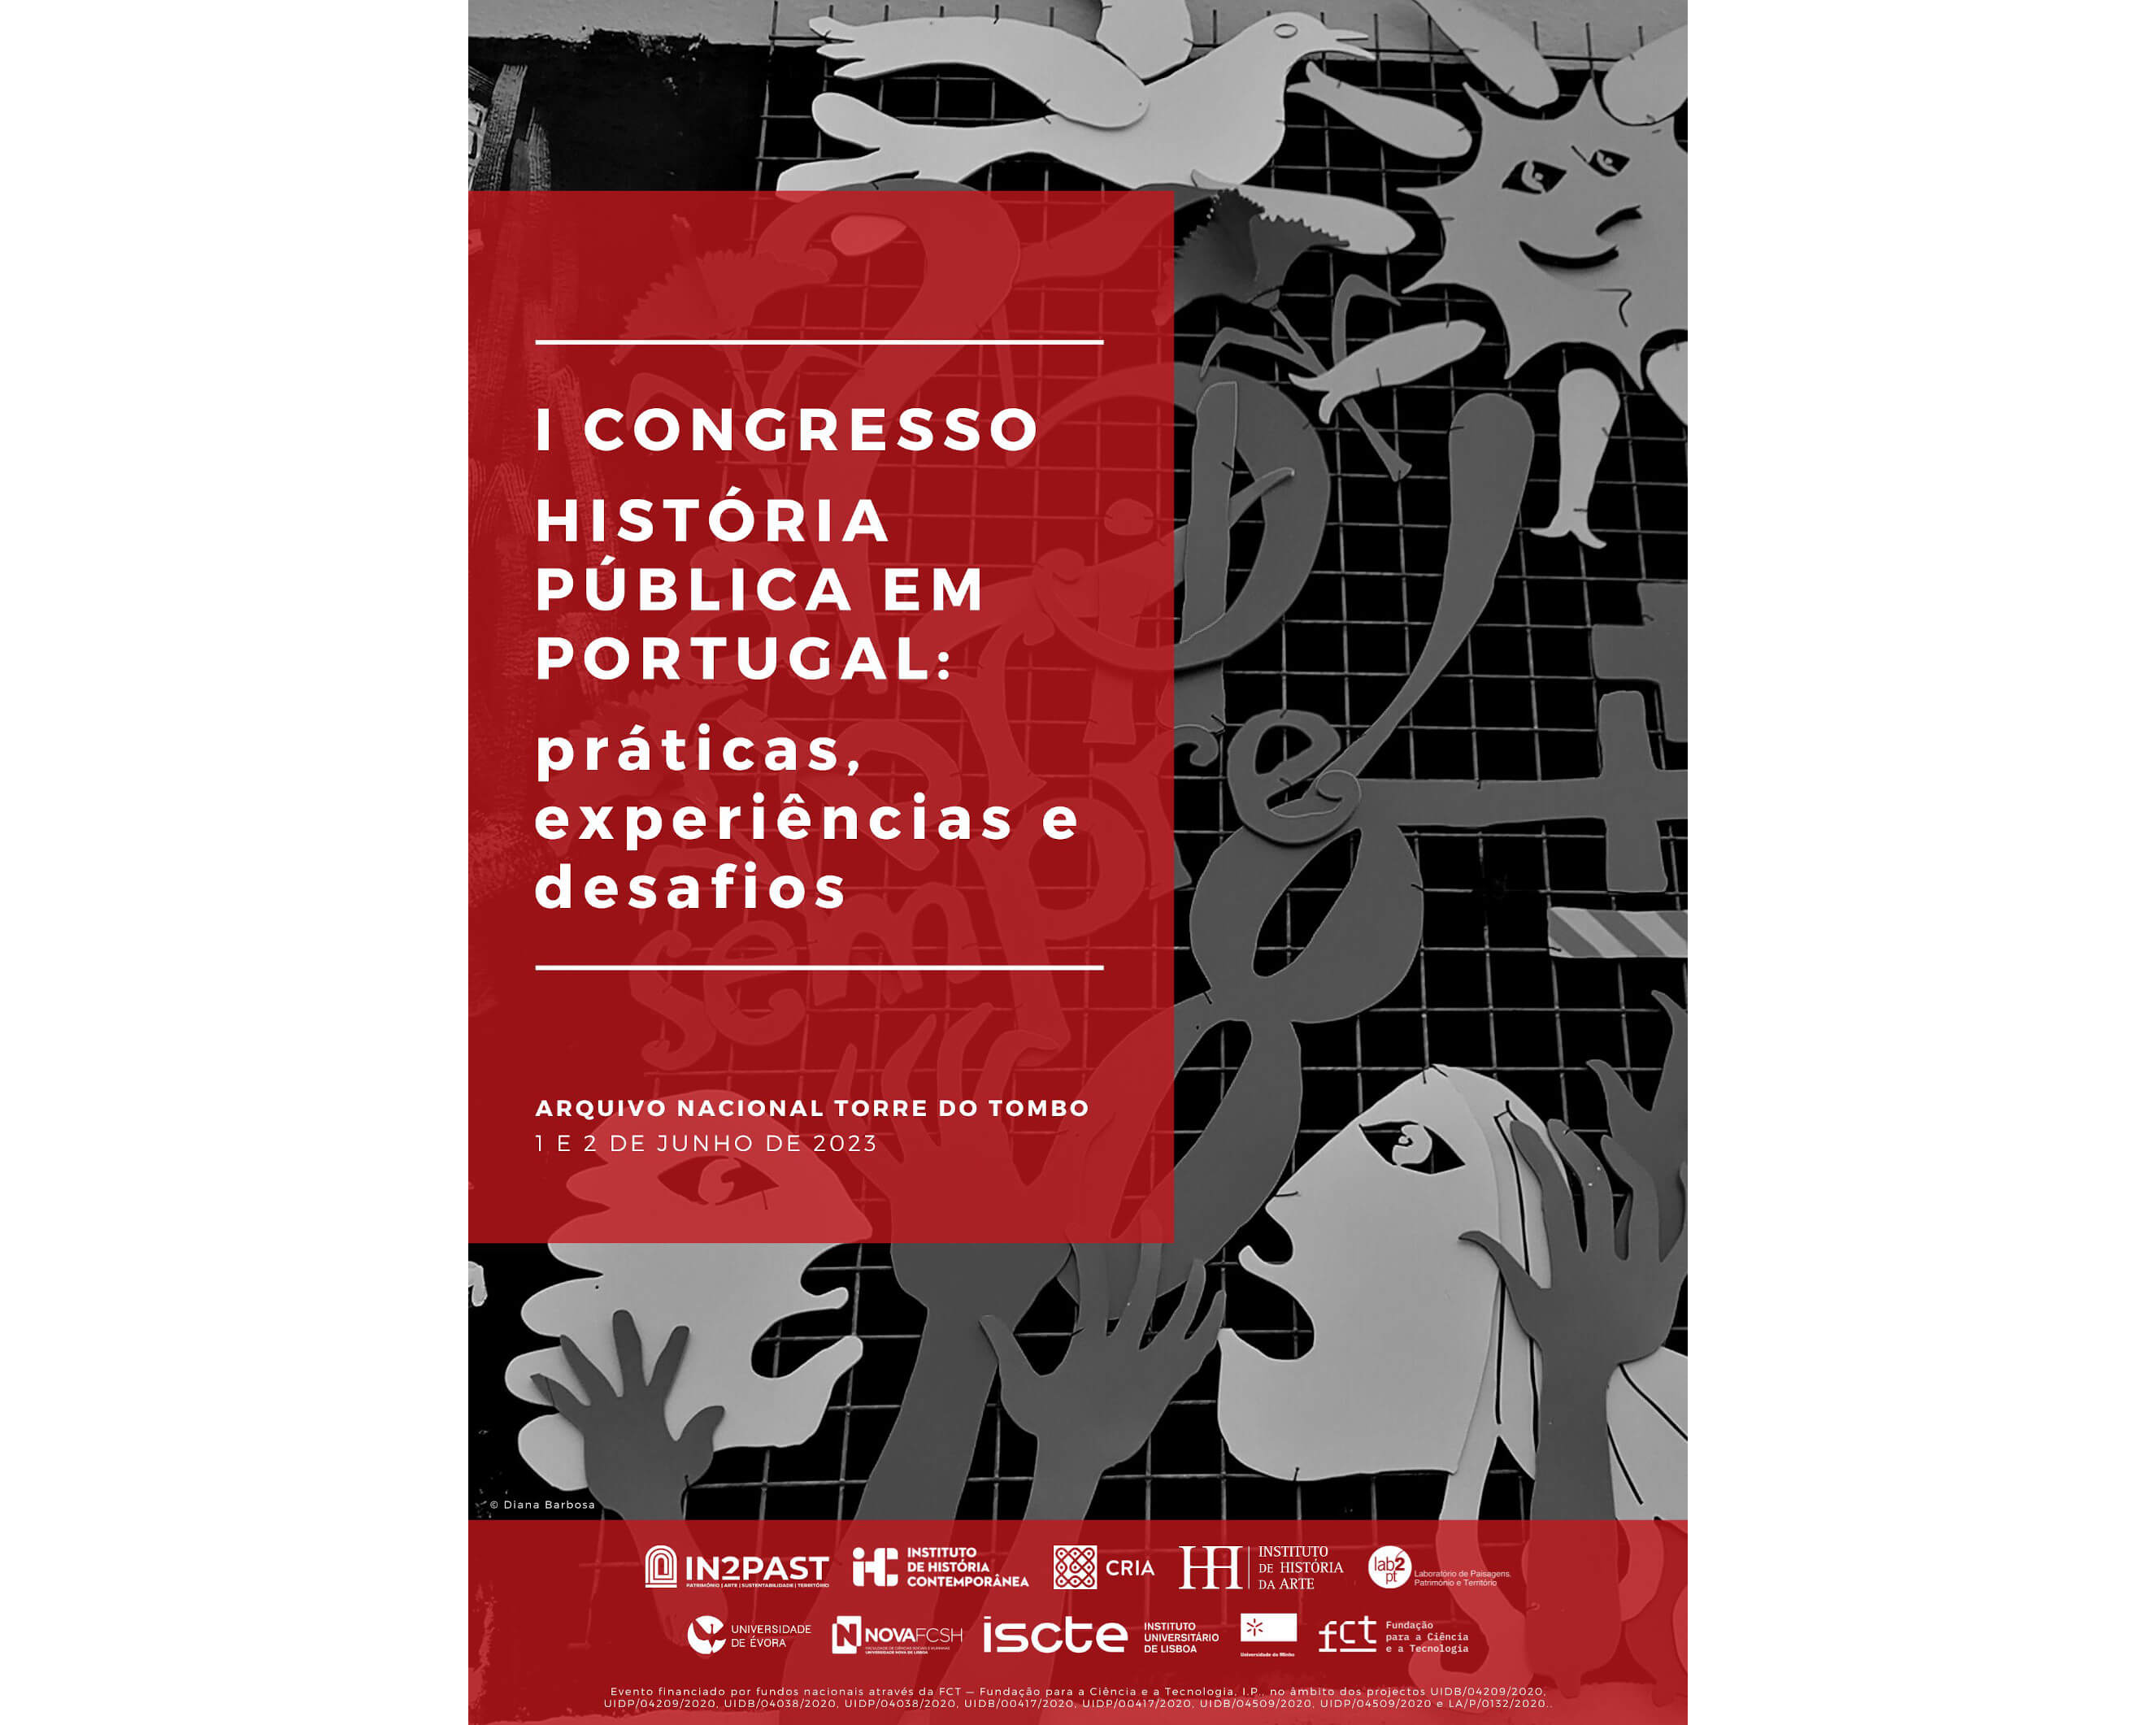 I Congresso História Pública em Portugal: práticas, experiências e desafios image